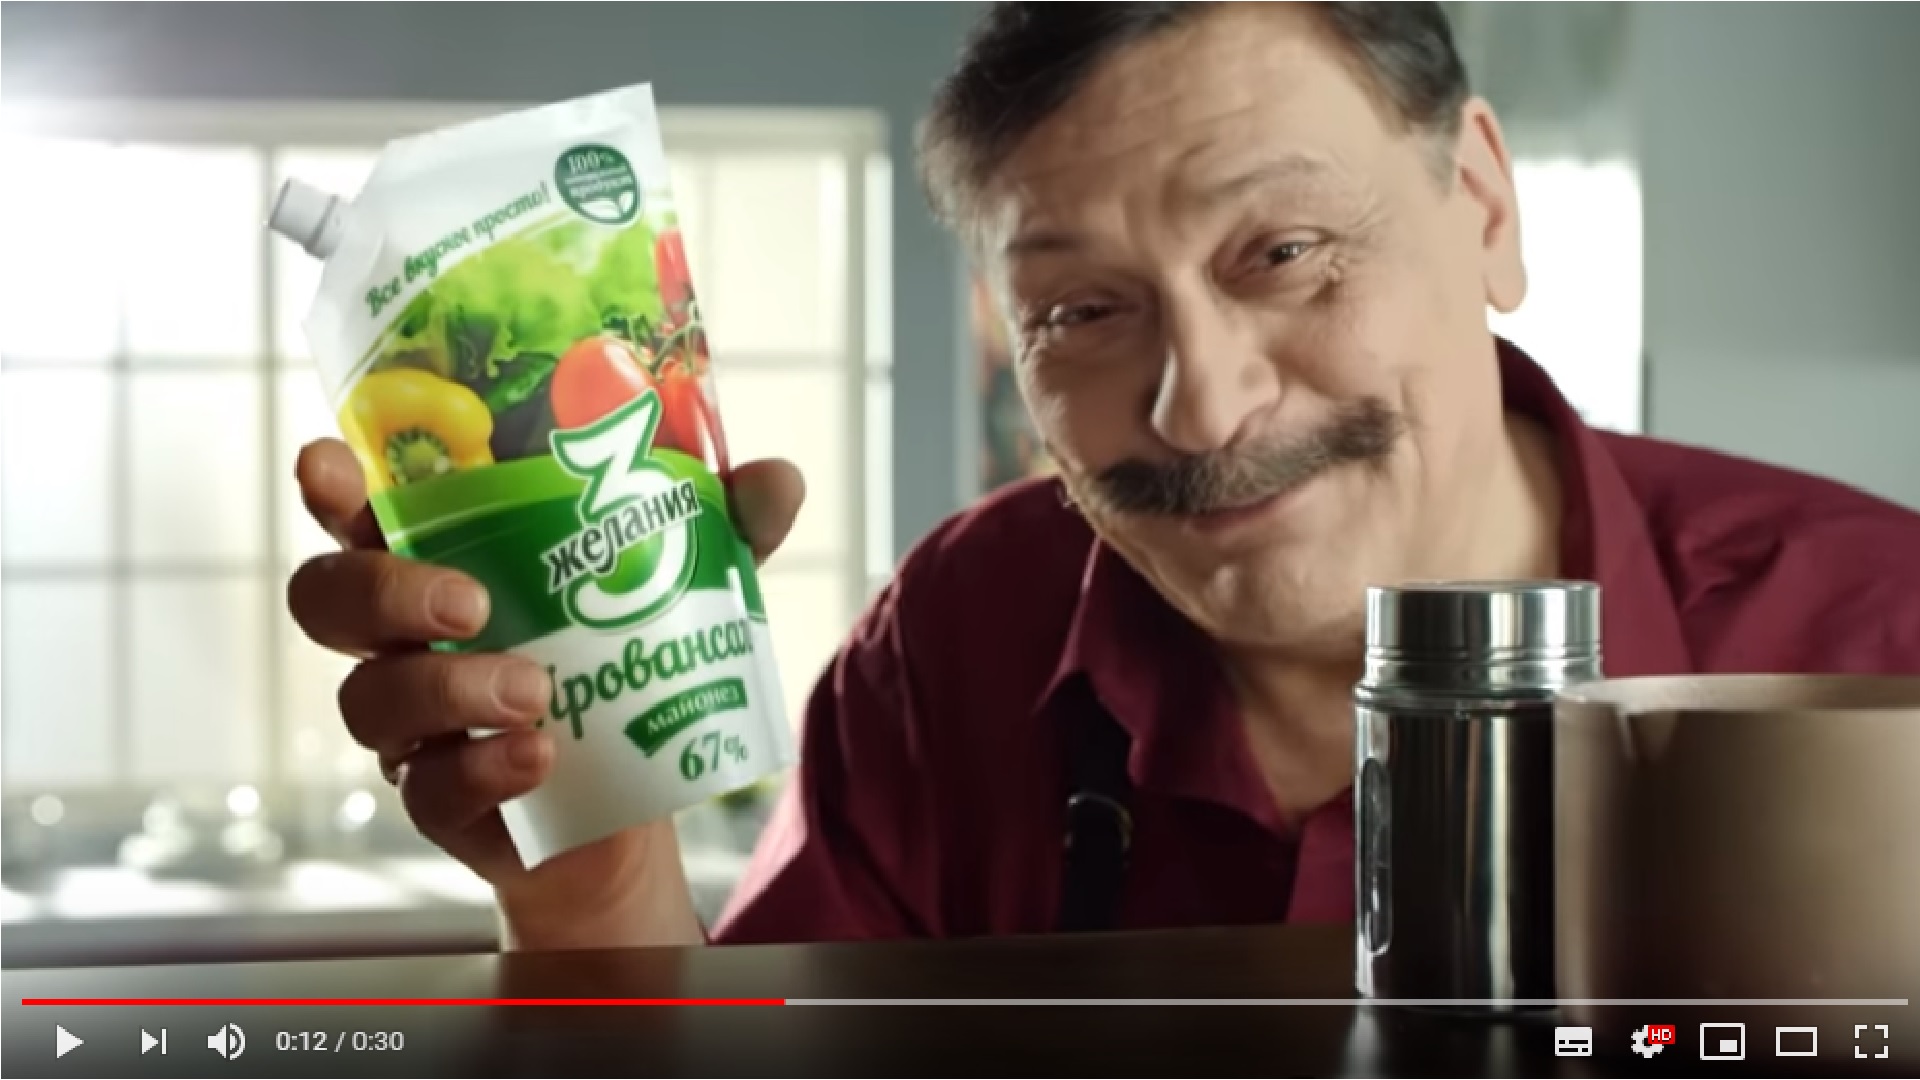 Пореченков рекламирует. Реклама майонеза.